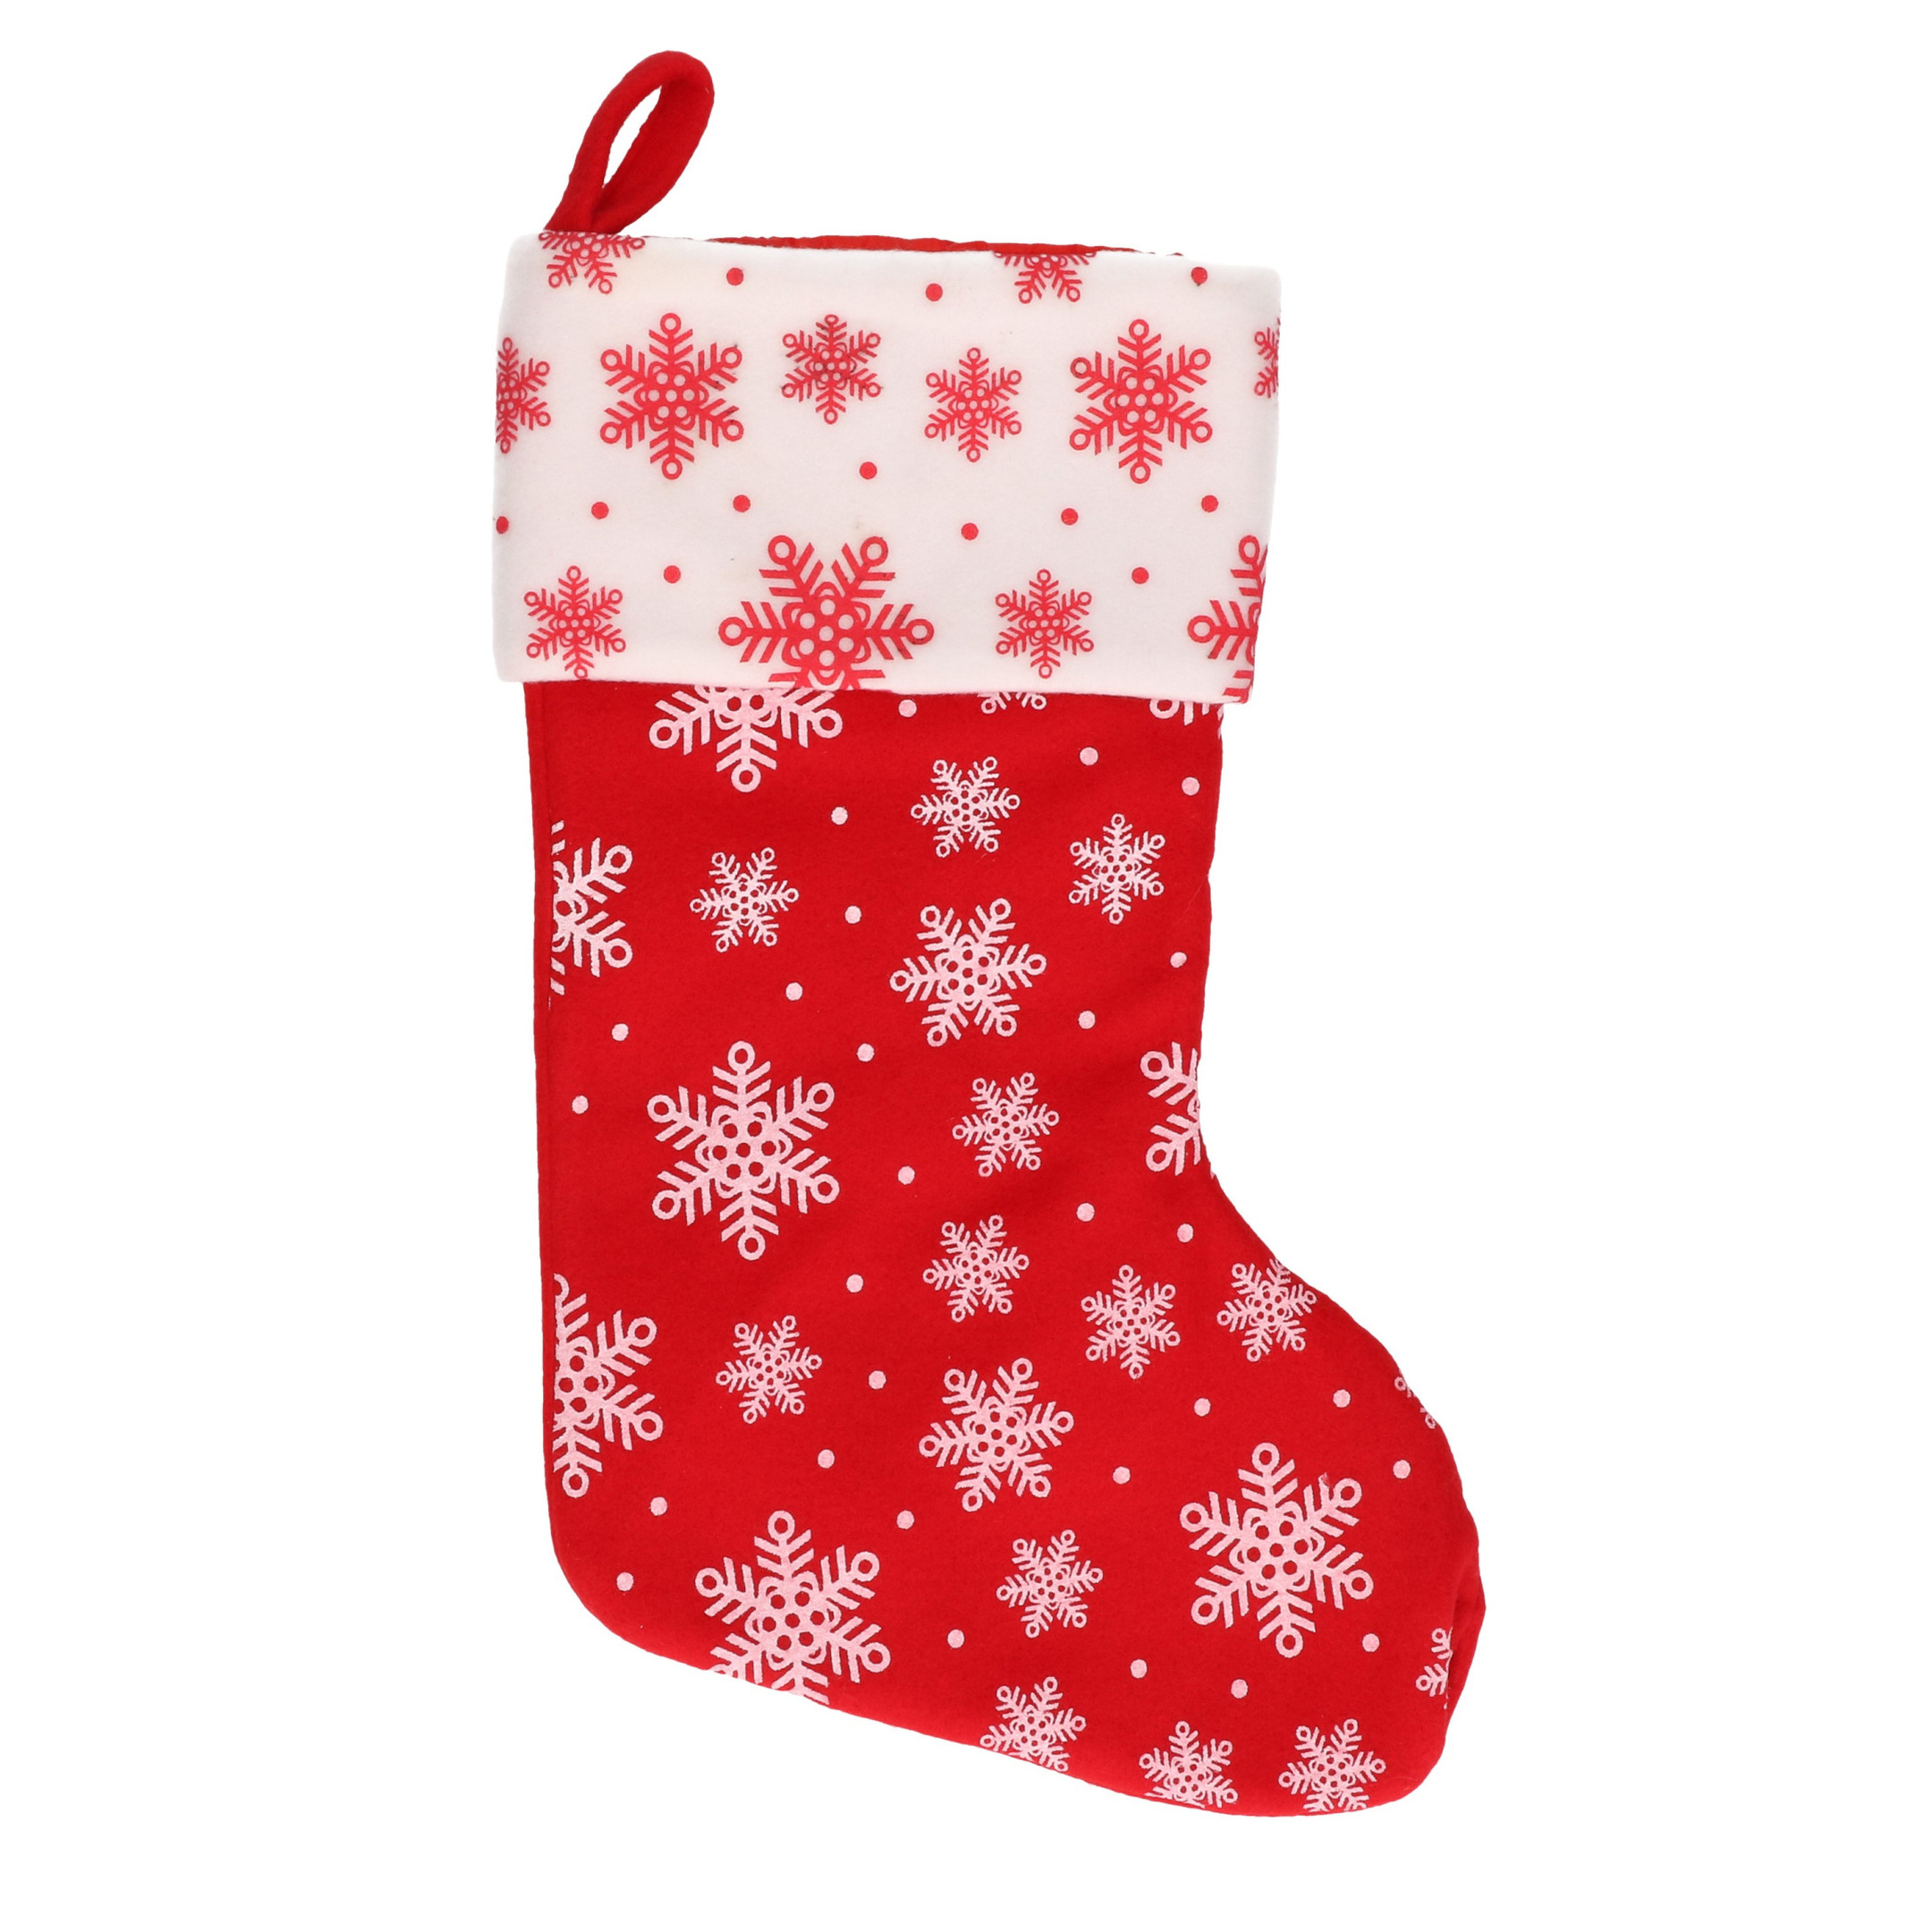 1x Rood-witte kerstsokken met sneeuwvlokken print 40 cm